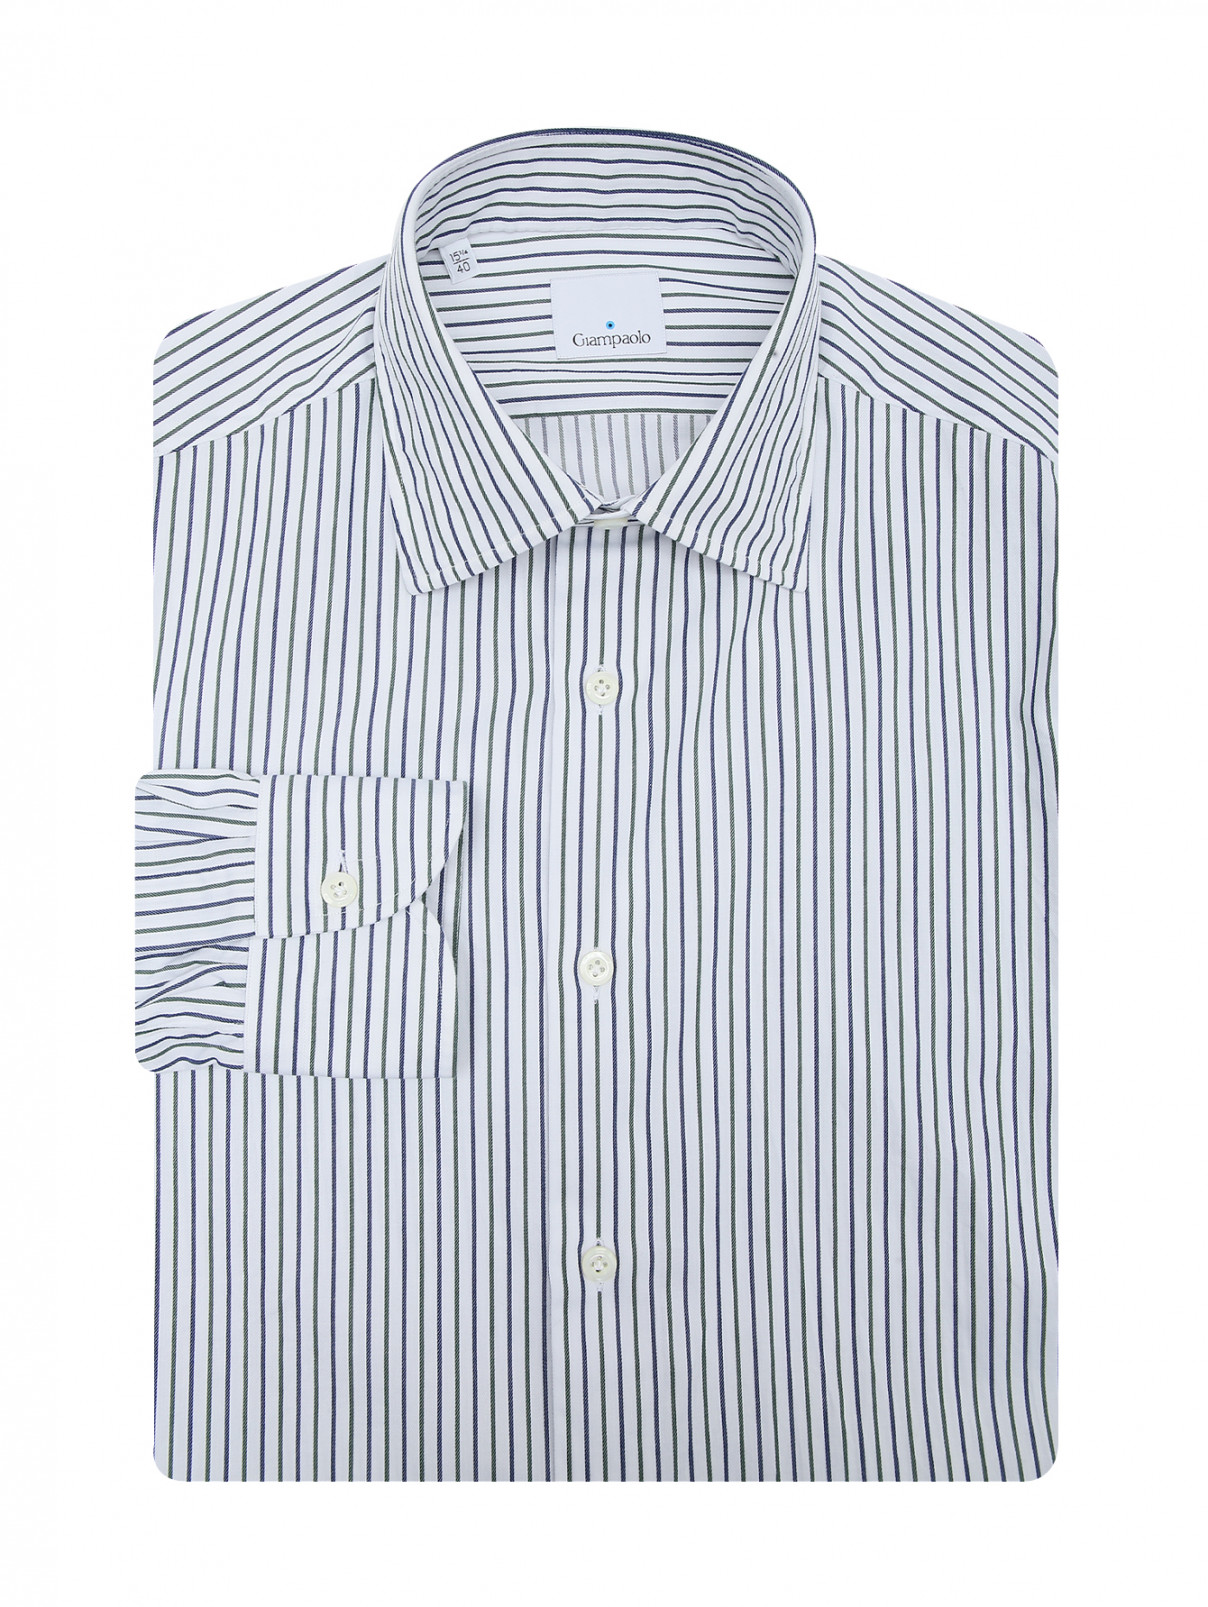 Рубашка из хлопка с узором полоска Giampaolo  –  Общий вид  – Цвет:  Узор